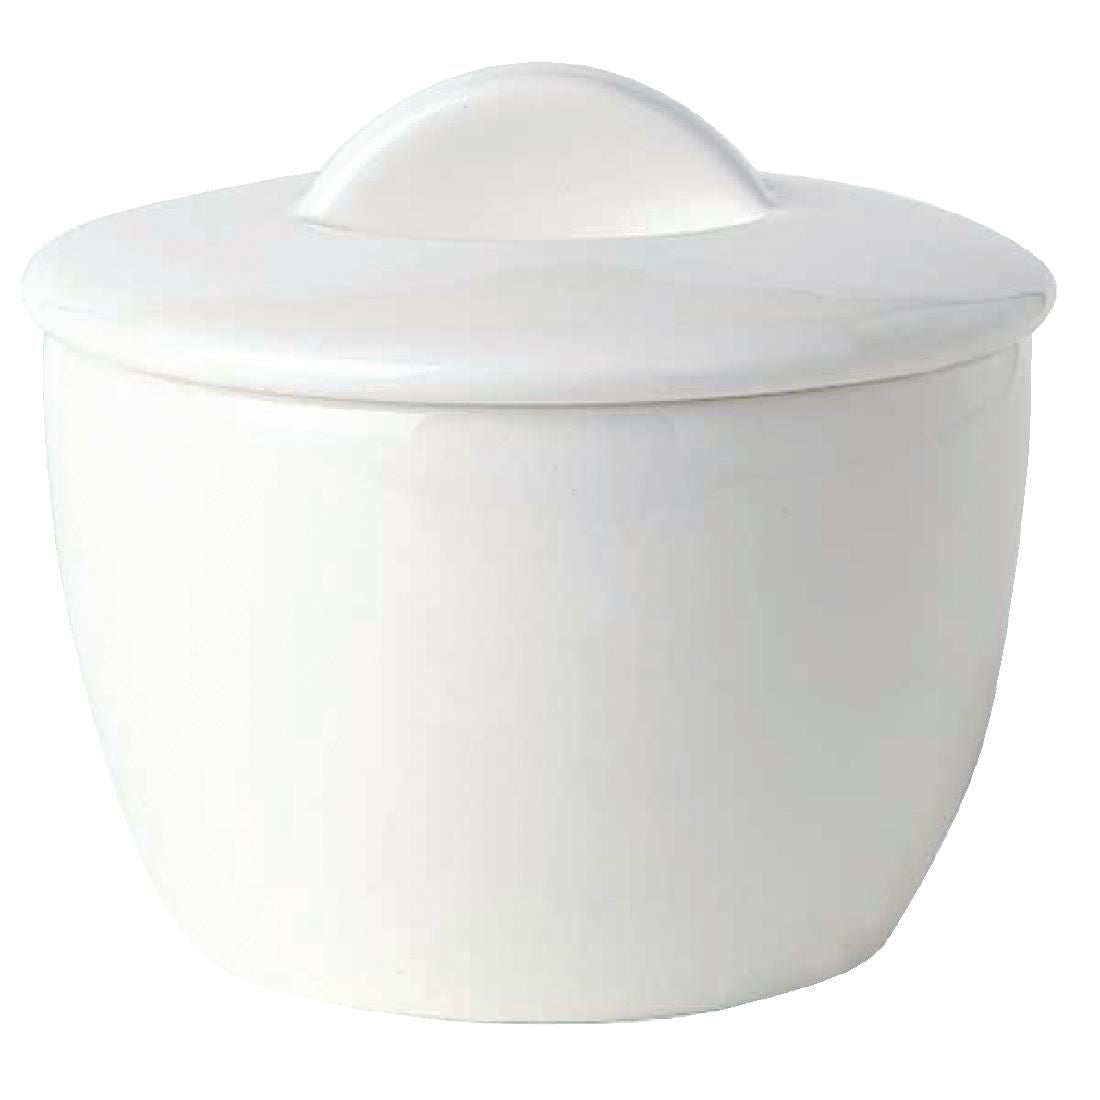 CG322 Royal Bone Ascot Sugar Bowls with Lids (Pack of 12)